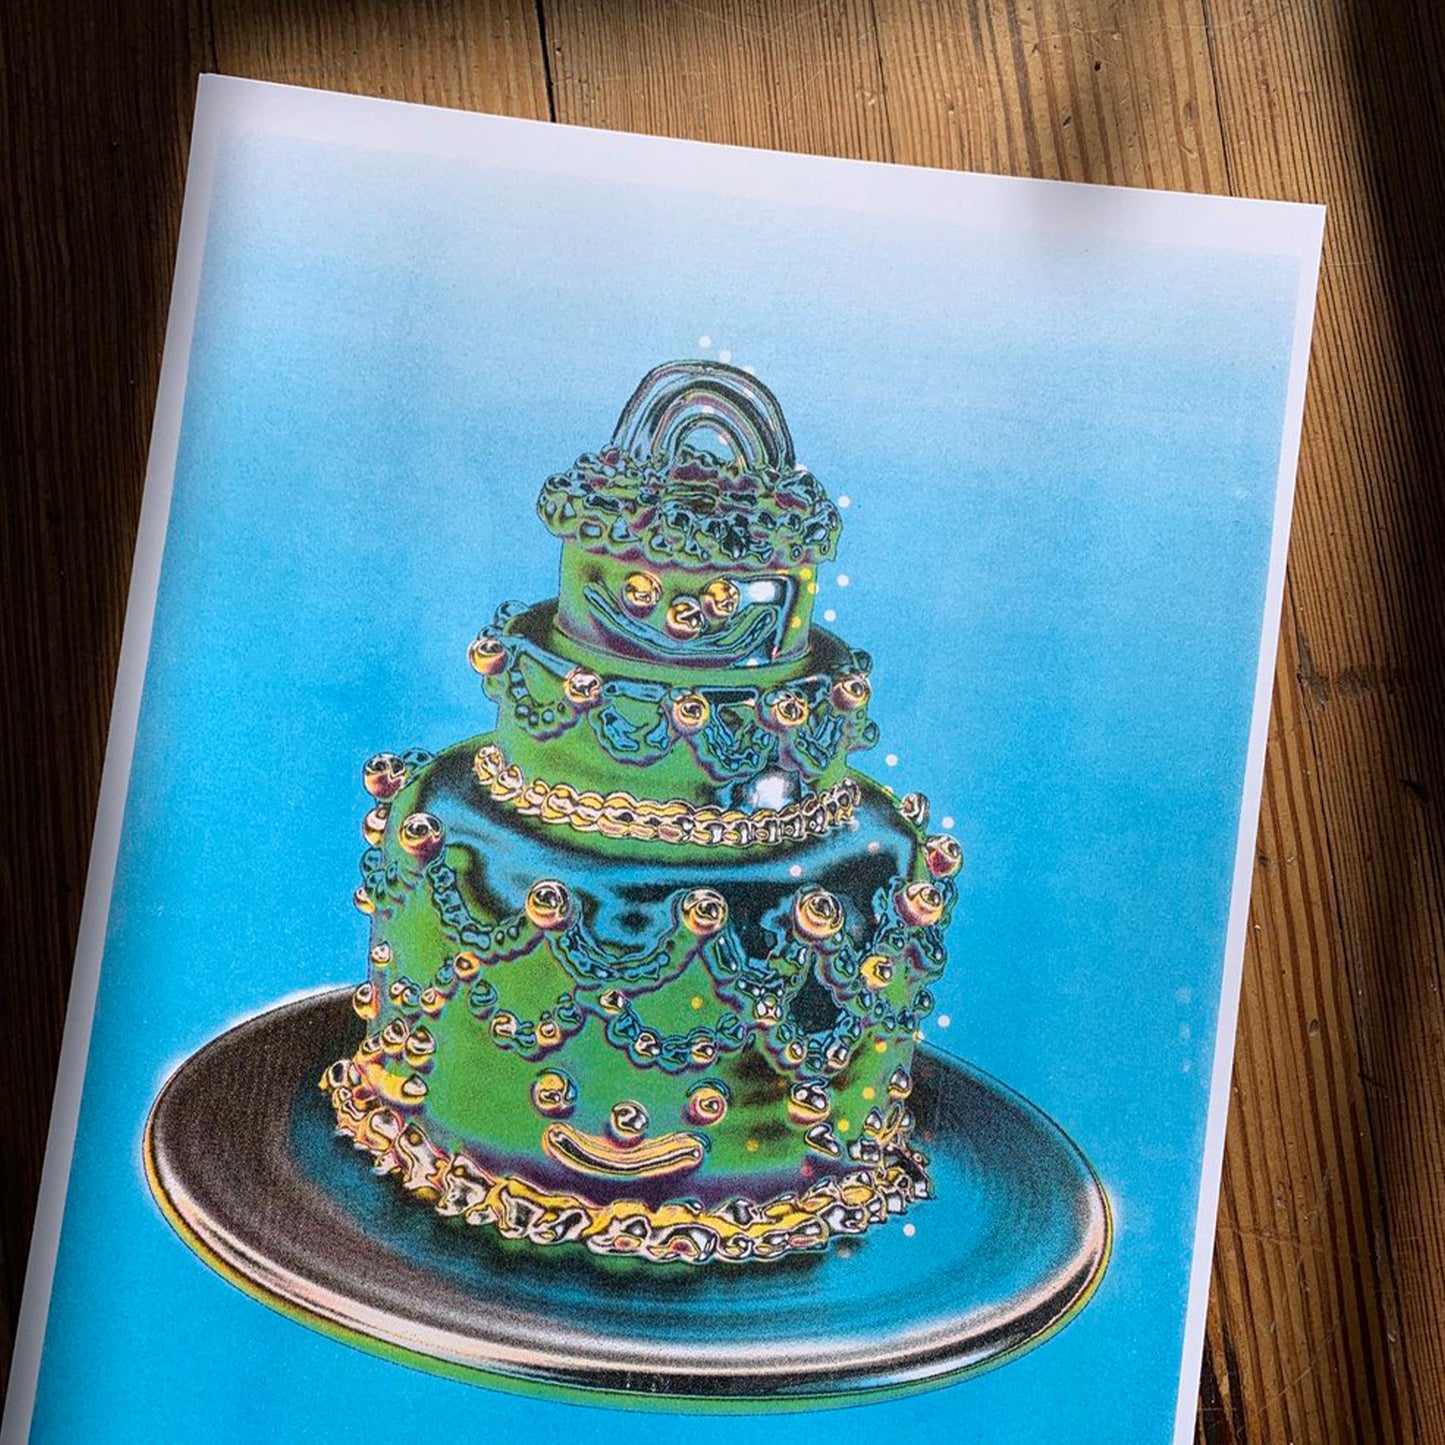 Alex Luciano: Gremlin Chrome Cake Risograph Print